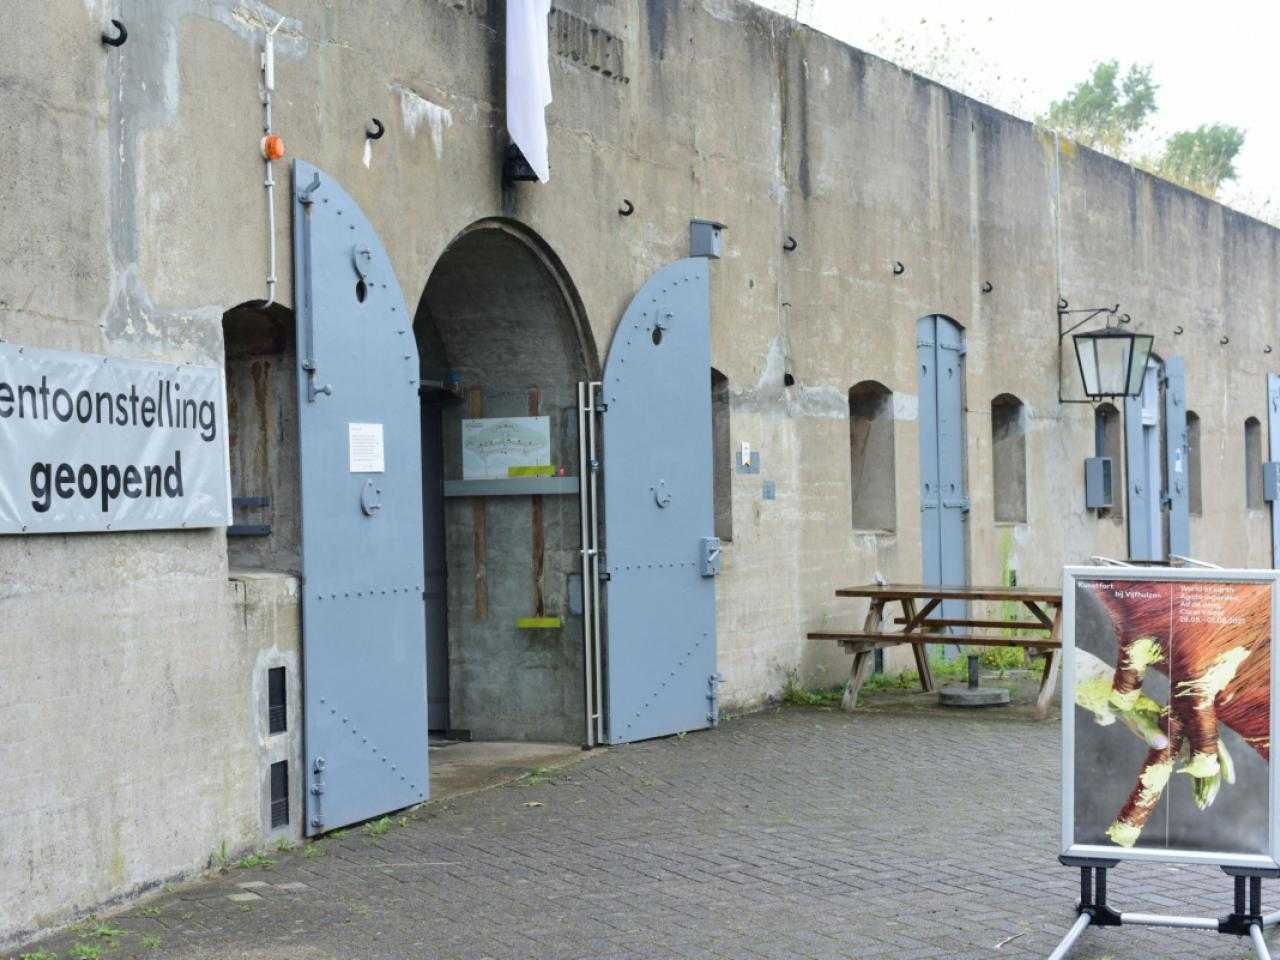 Entrance of Fort Vijfhuizen